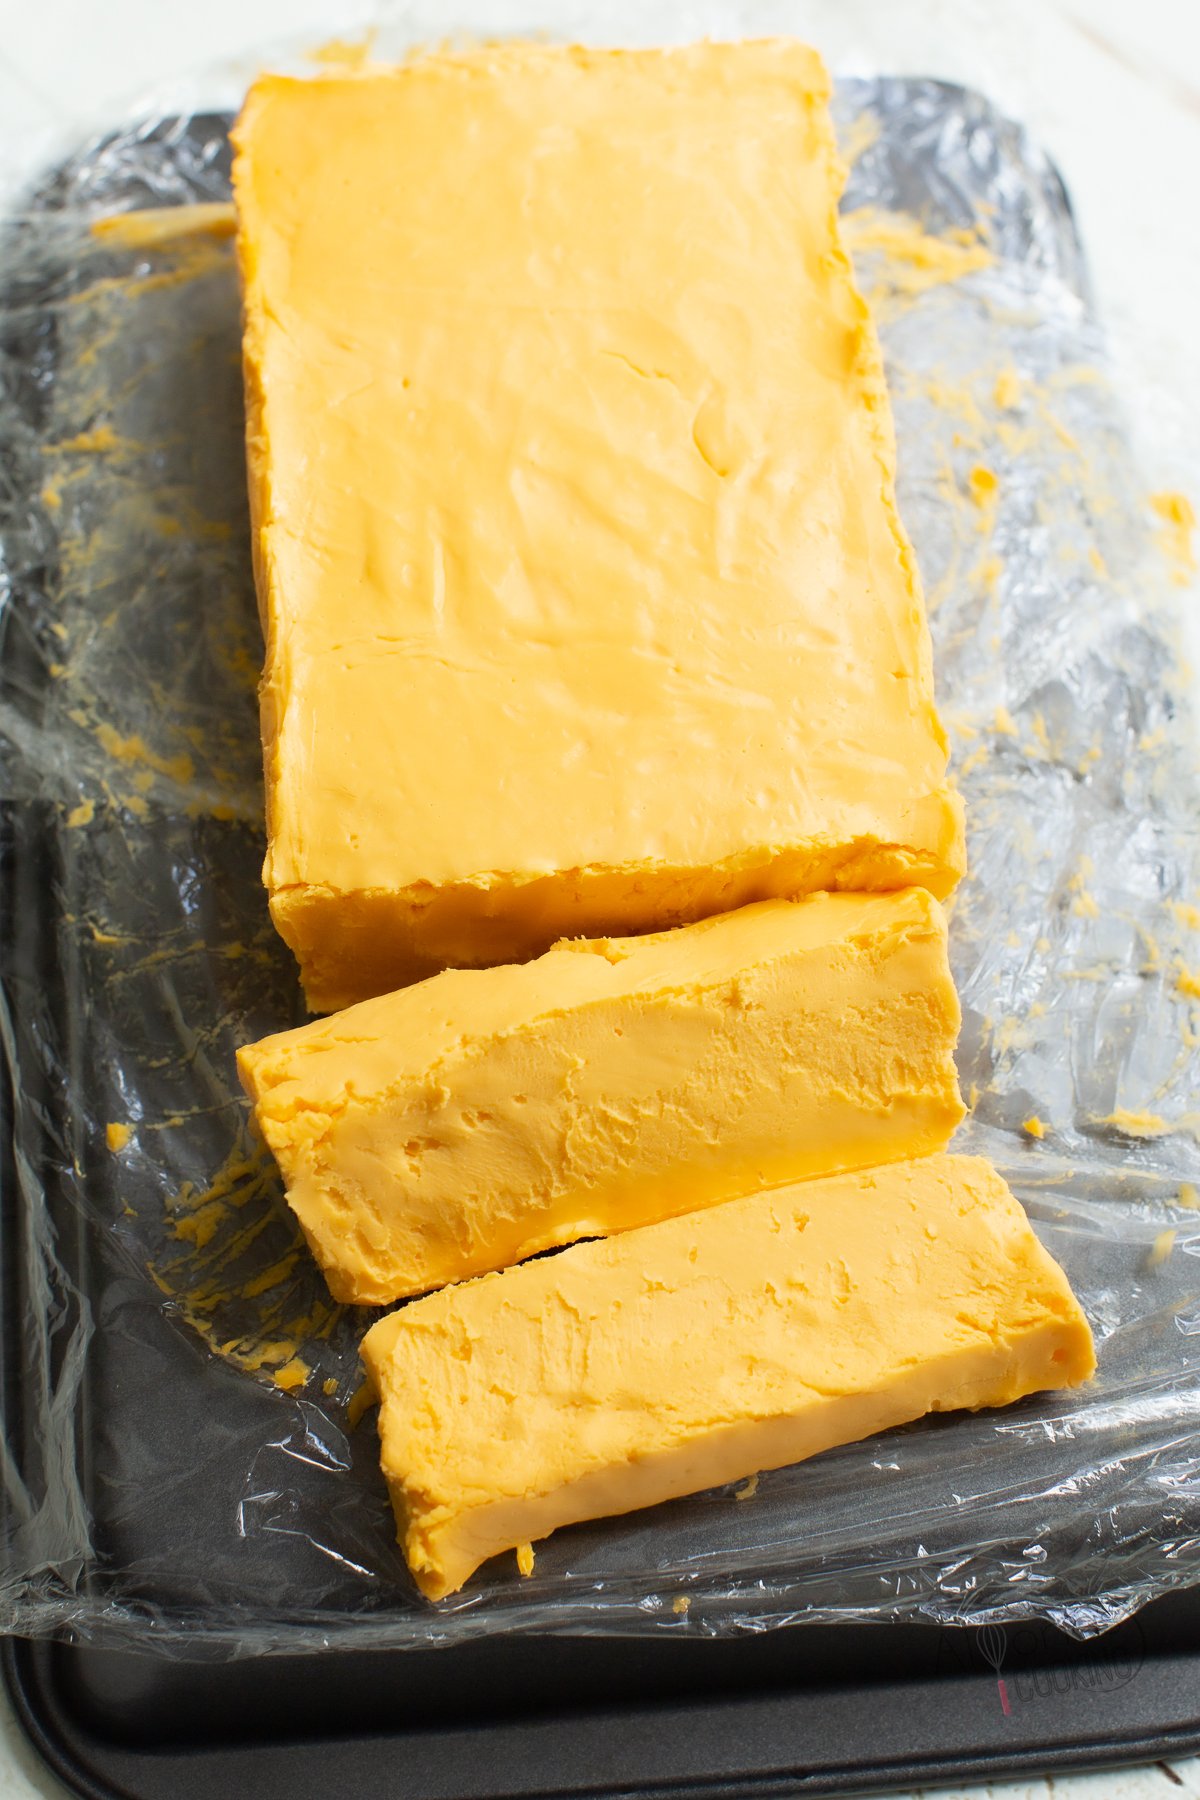 Homemade Velveeta cheese